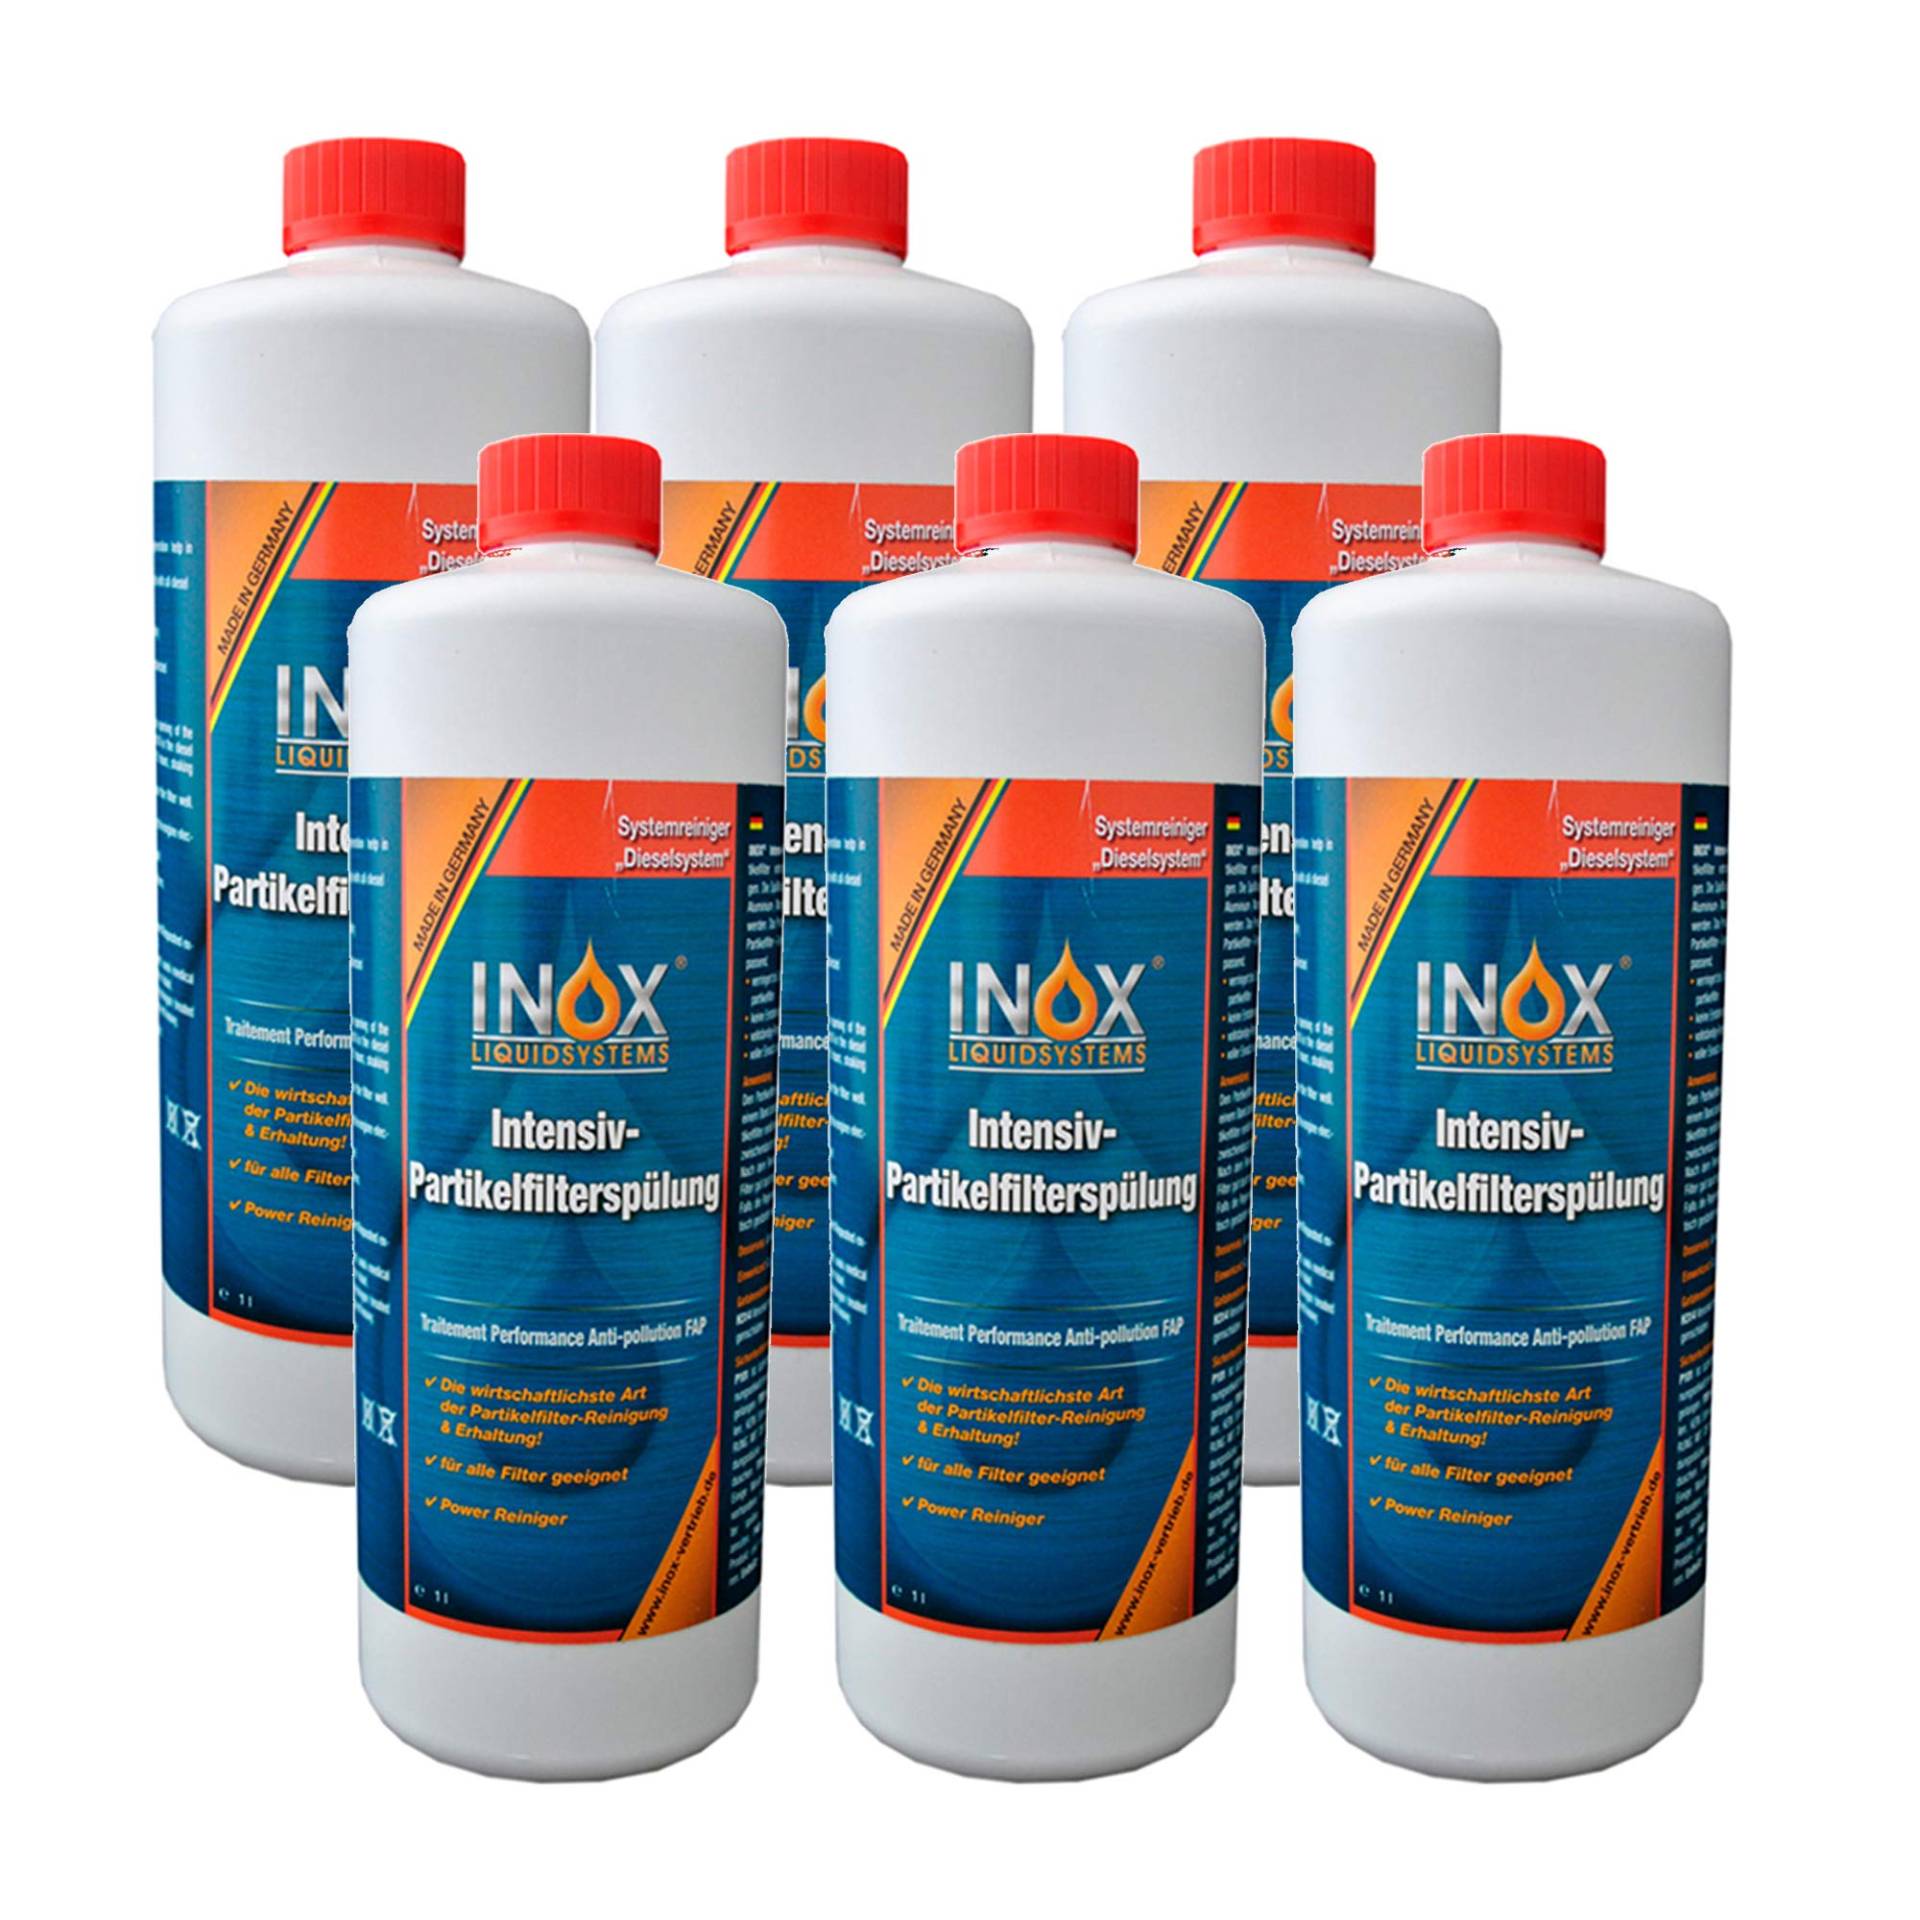 INOX® Intensiv Dieselpartikelfilter-Spülung, 6 x 1 Liter - Additiv für alle Dieselsysteme mit Partikelfilter von INOX-LIQUIDSYSTEMS